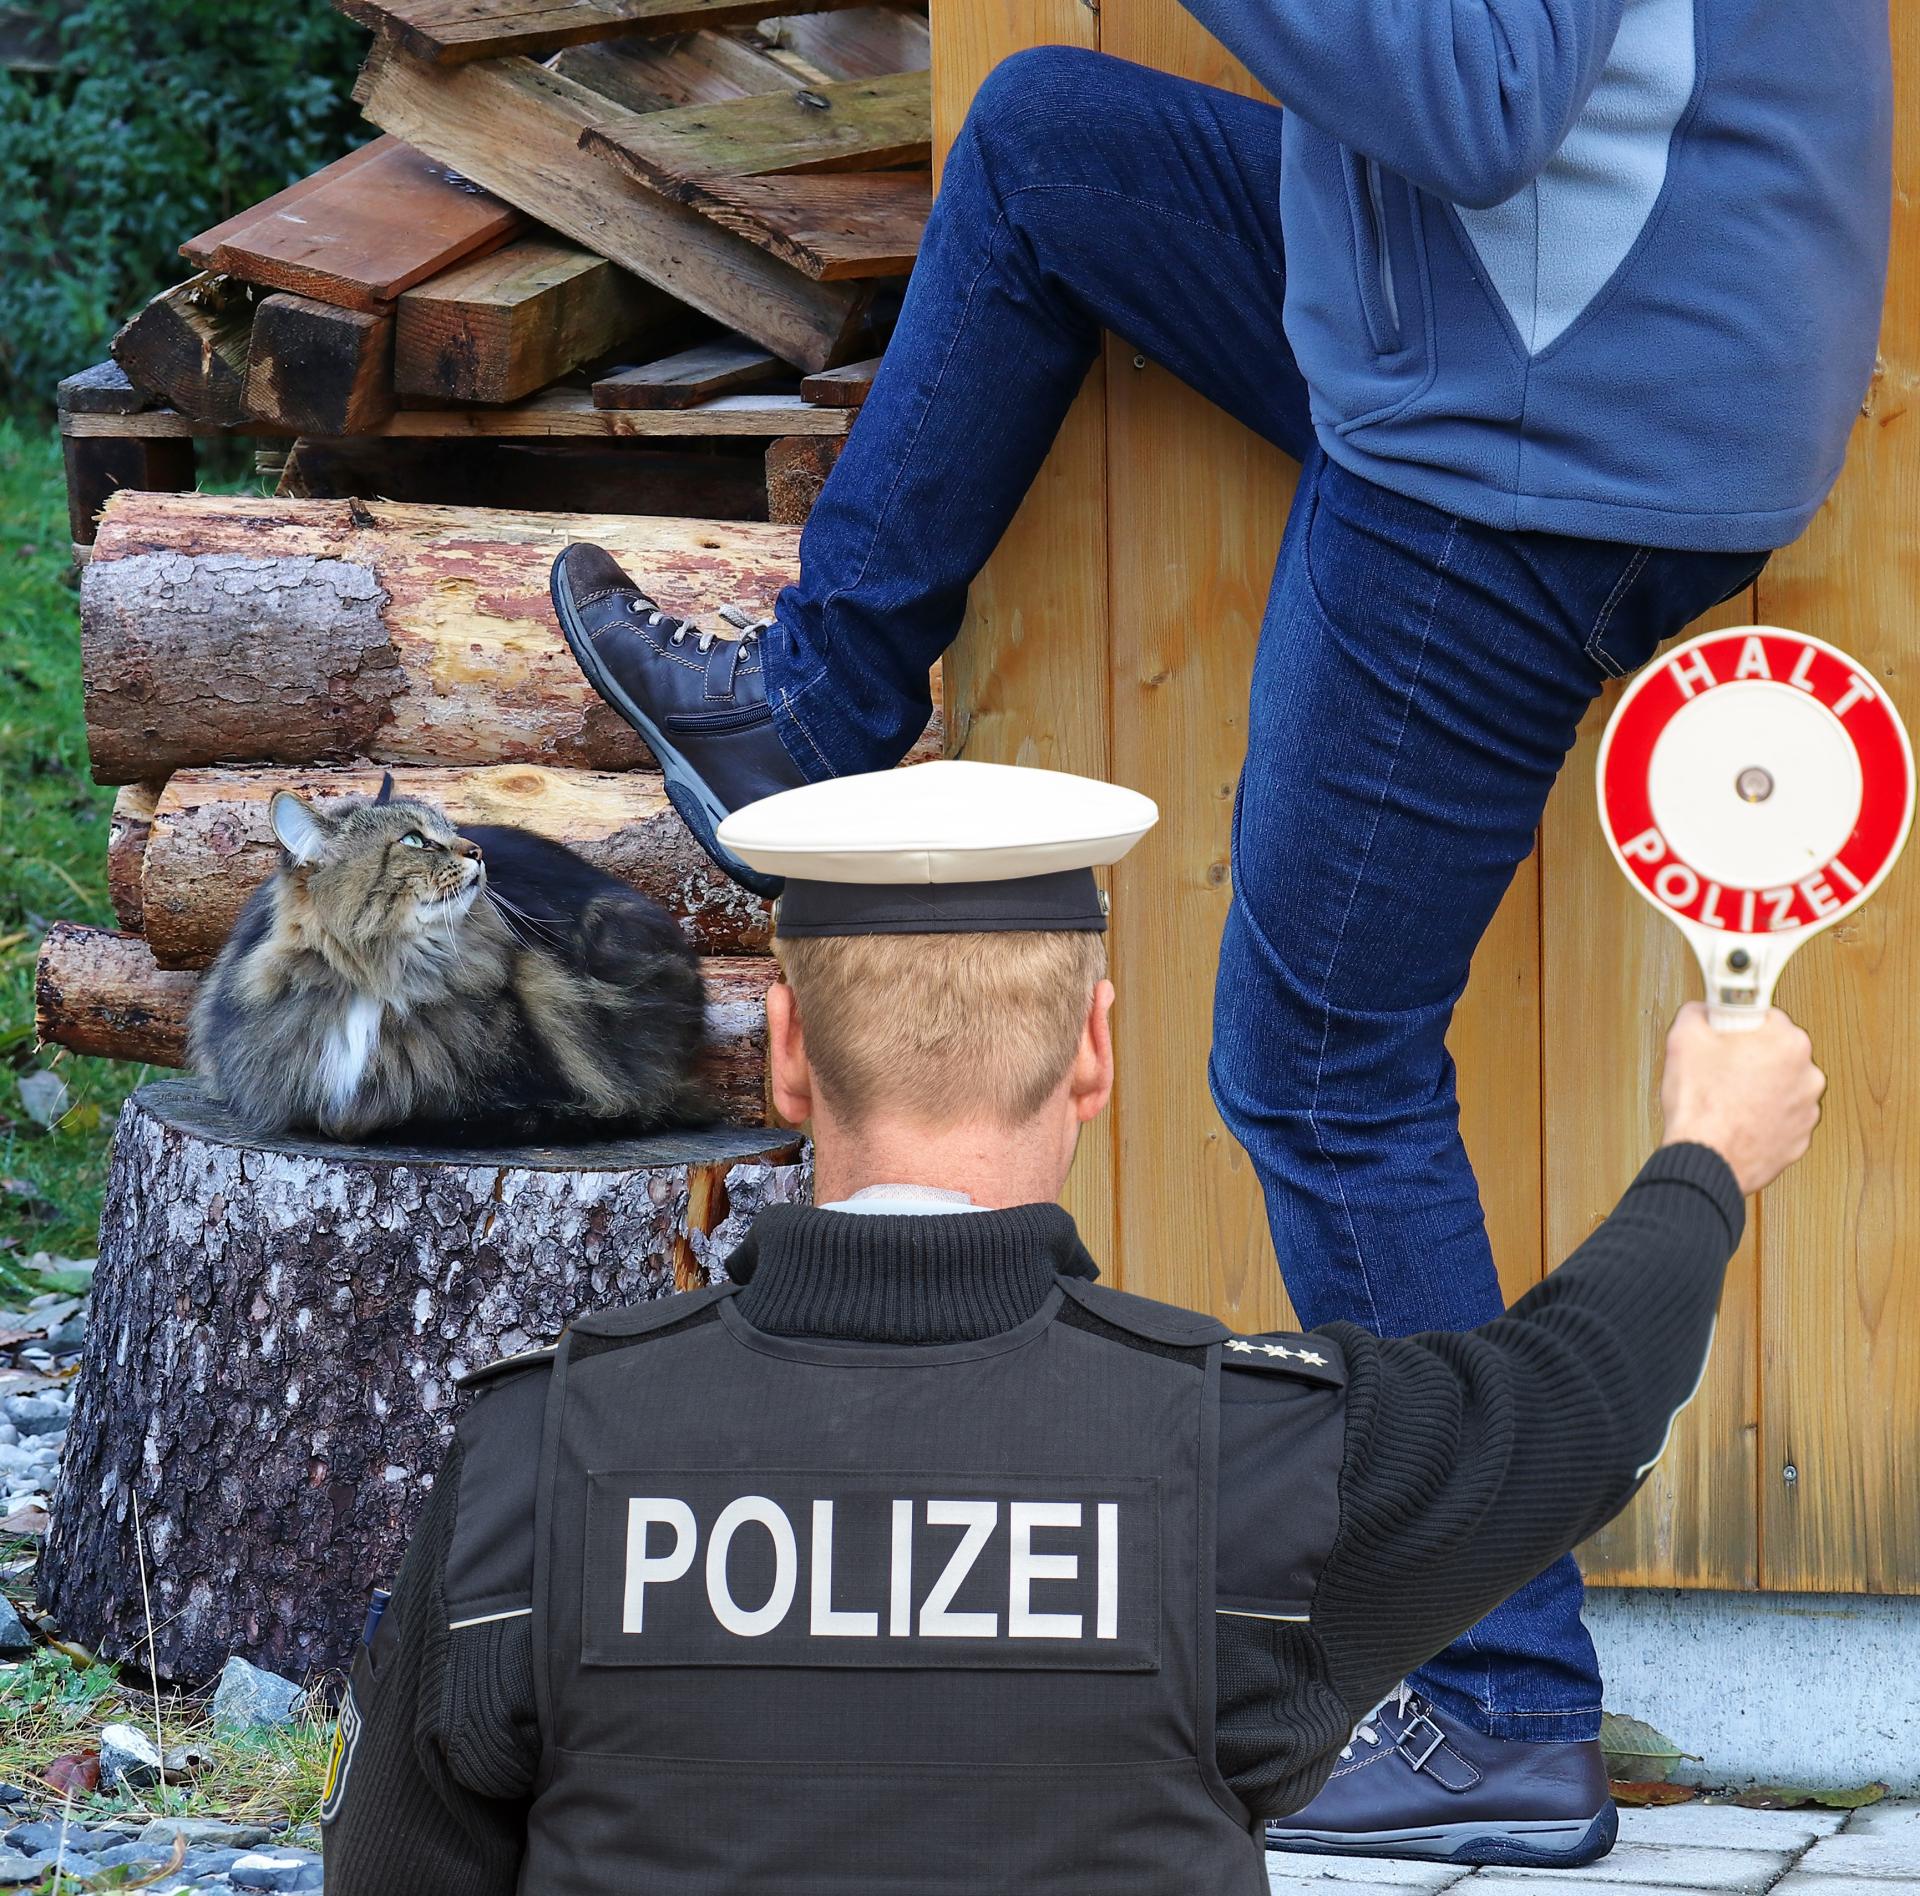 Katze auf Holzstrunk ein Mann setzt zum Fusstritt an, Polizist hält die Halt Polizei Tafel zur Warnung in die Luft.